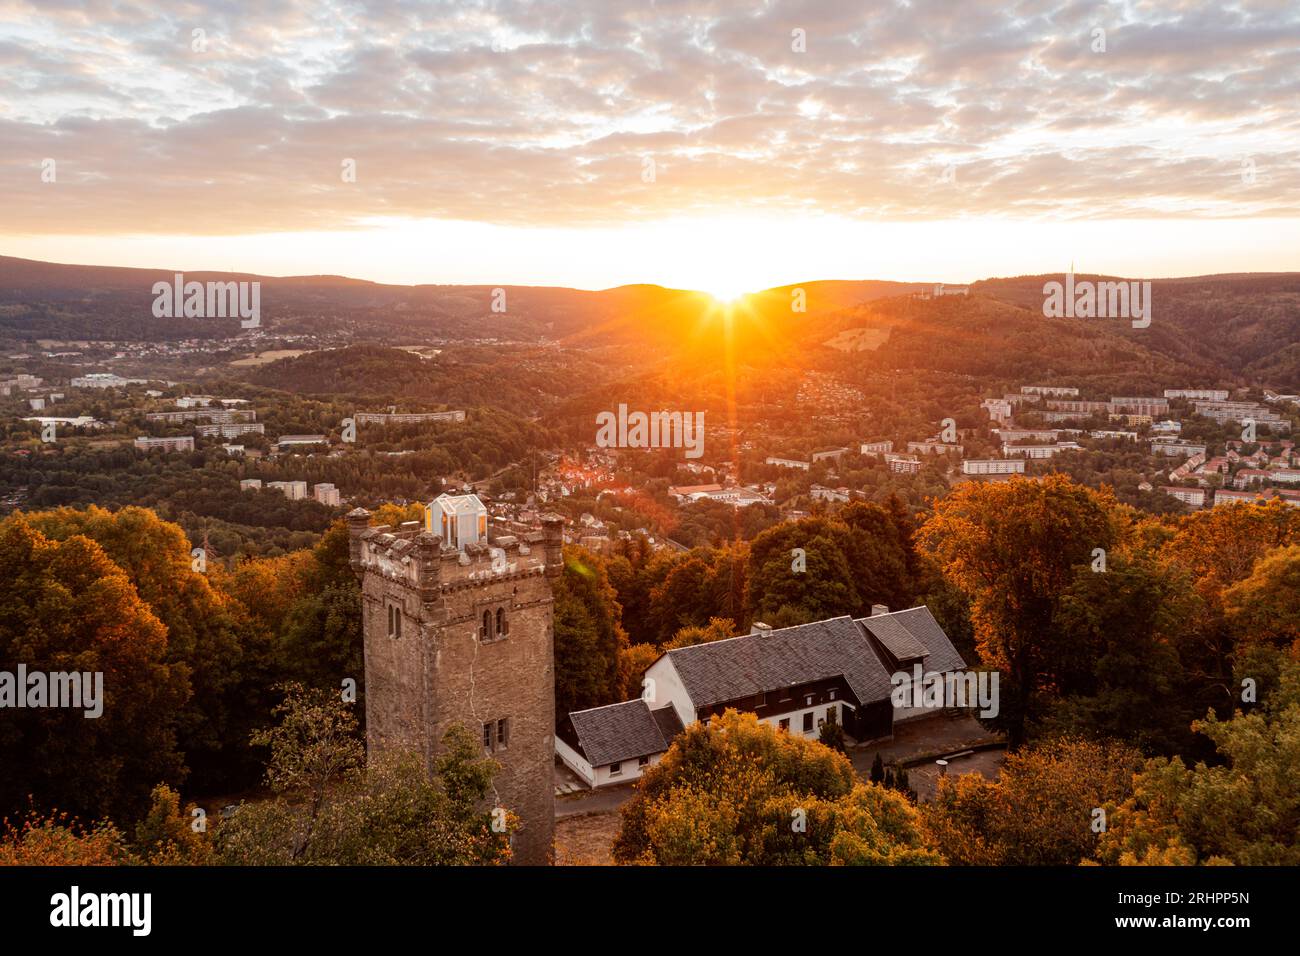 Deutschland, Thüringen, Suhl, Turm, Wald, Berg, Wald, Sonnenaufgang Übersicht, Hintergrundbeleuchtung, Luftbild Stockfoto